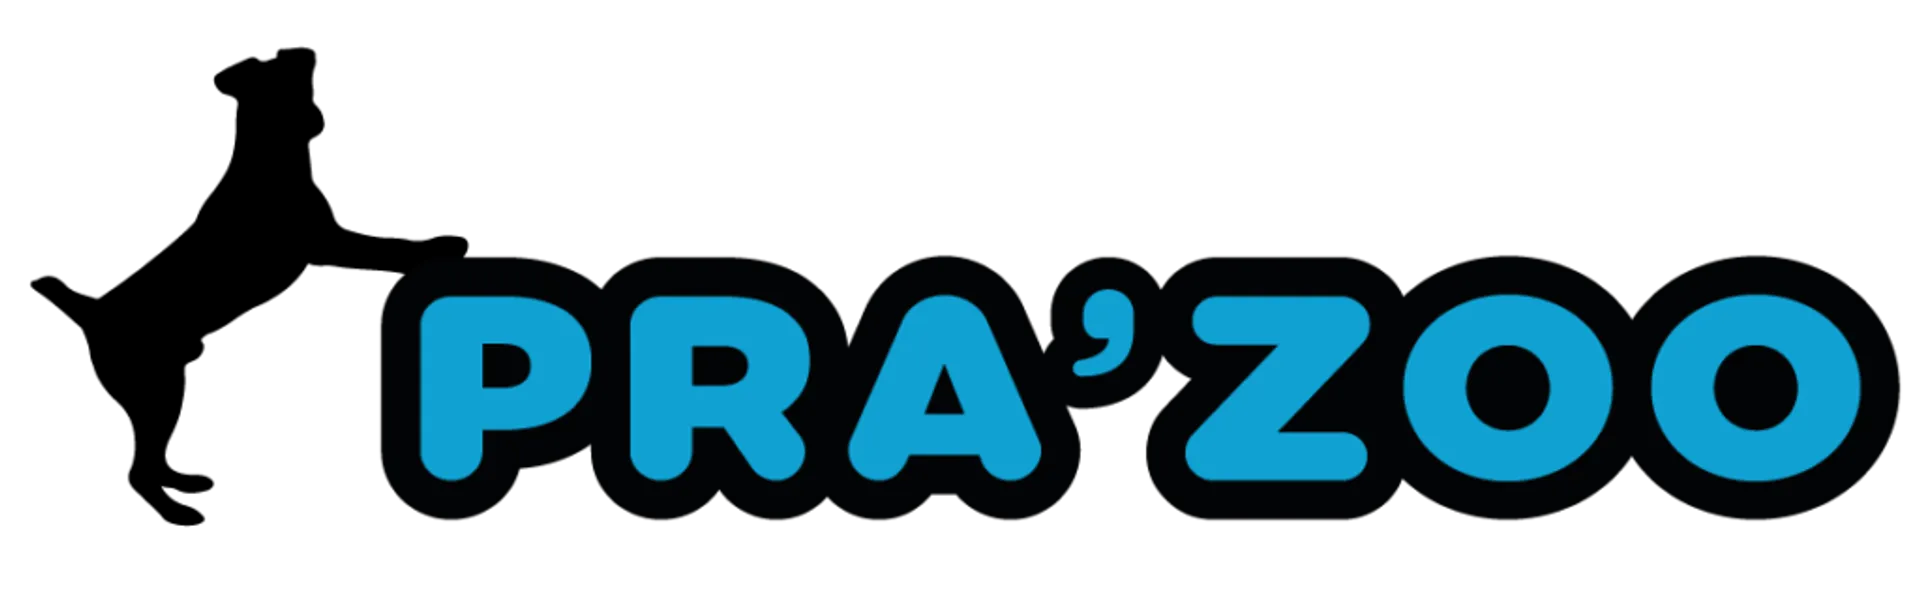 PRAA'ZOO logo del volantino attuale